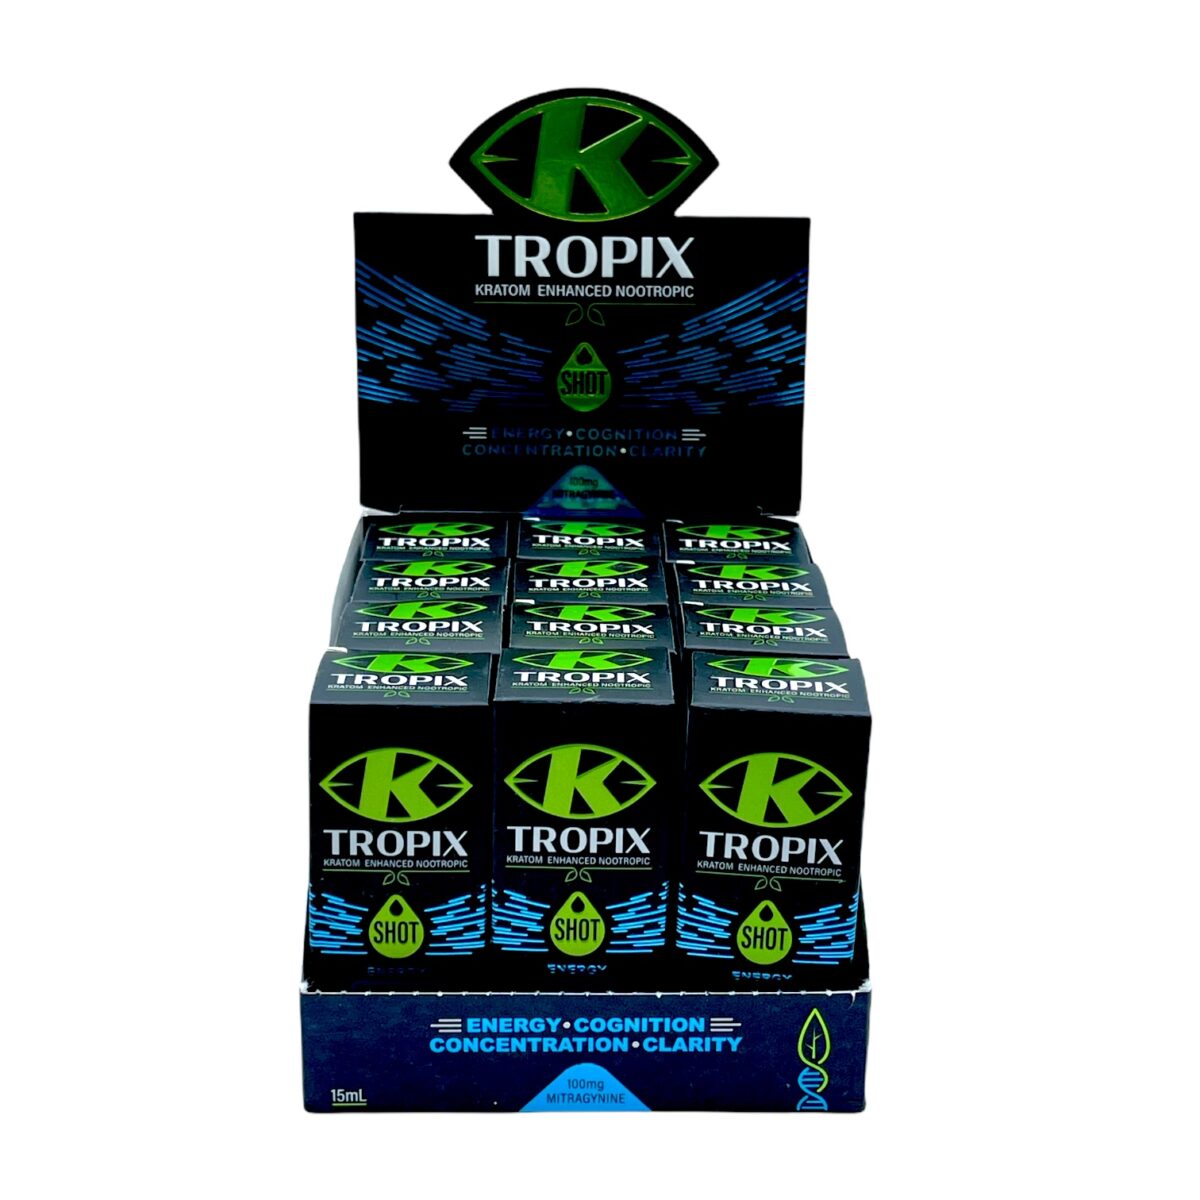 K-TROPIX Kratom Enhanced Nootropic Extract Shot, 15ml